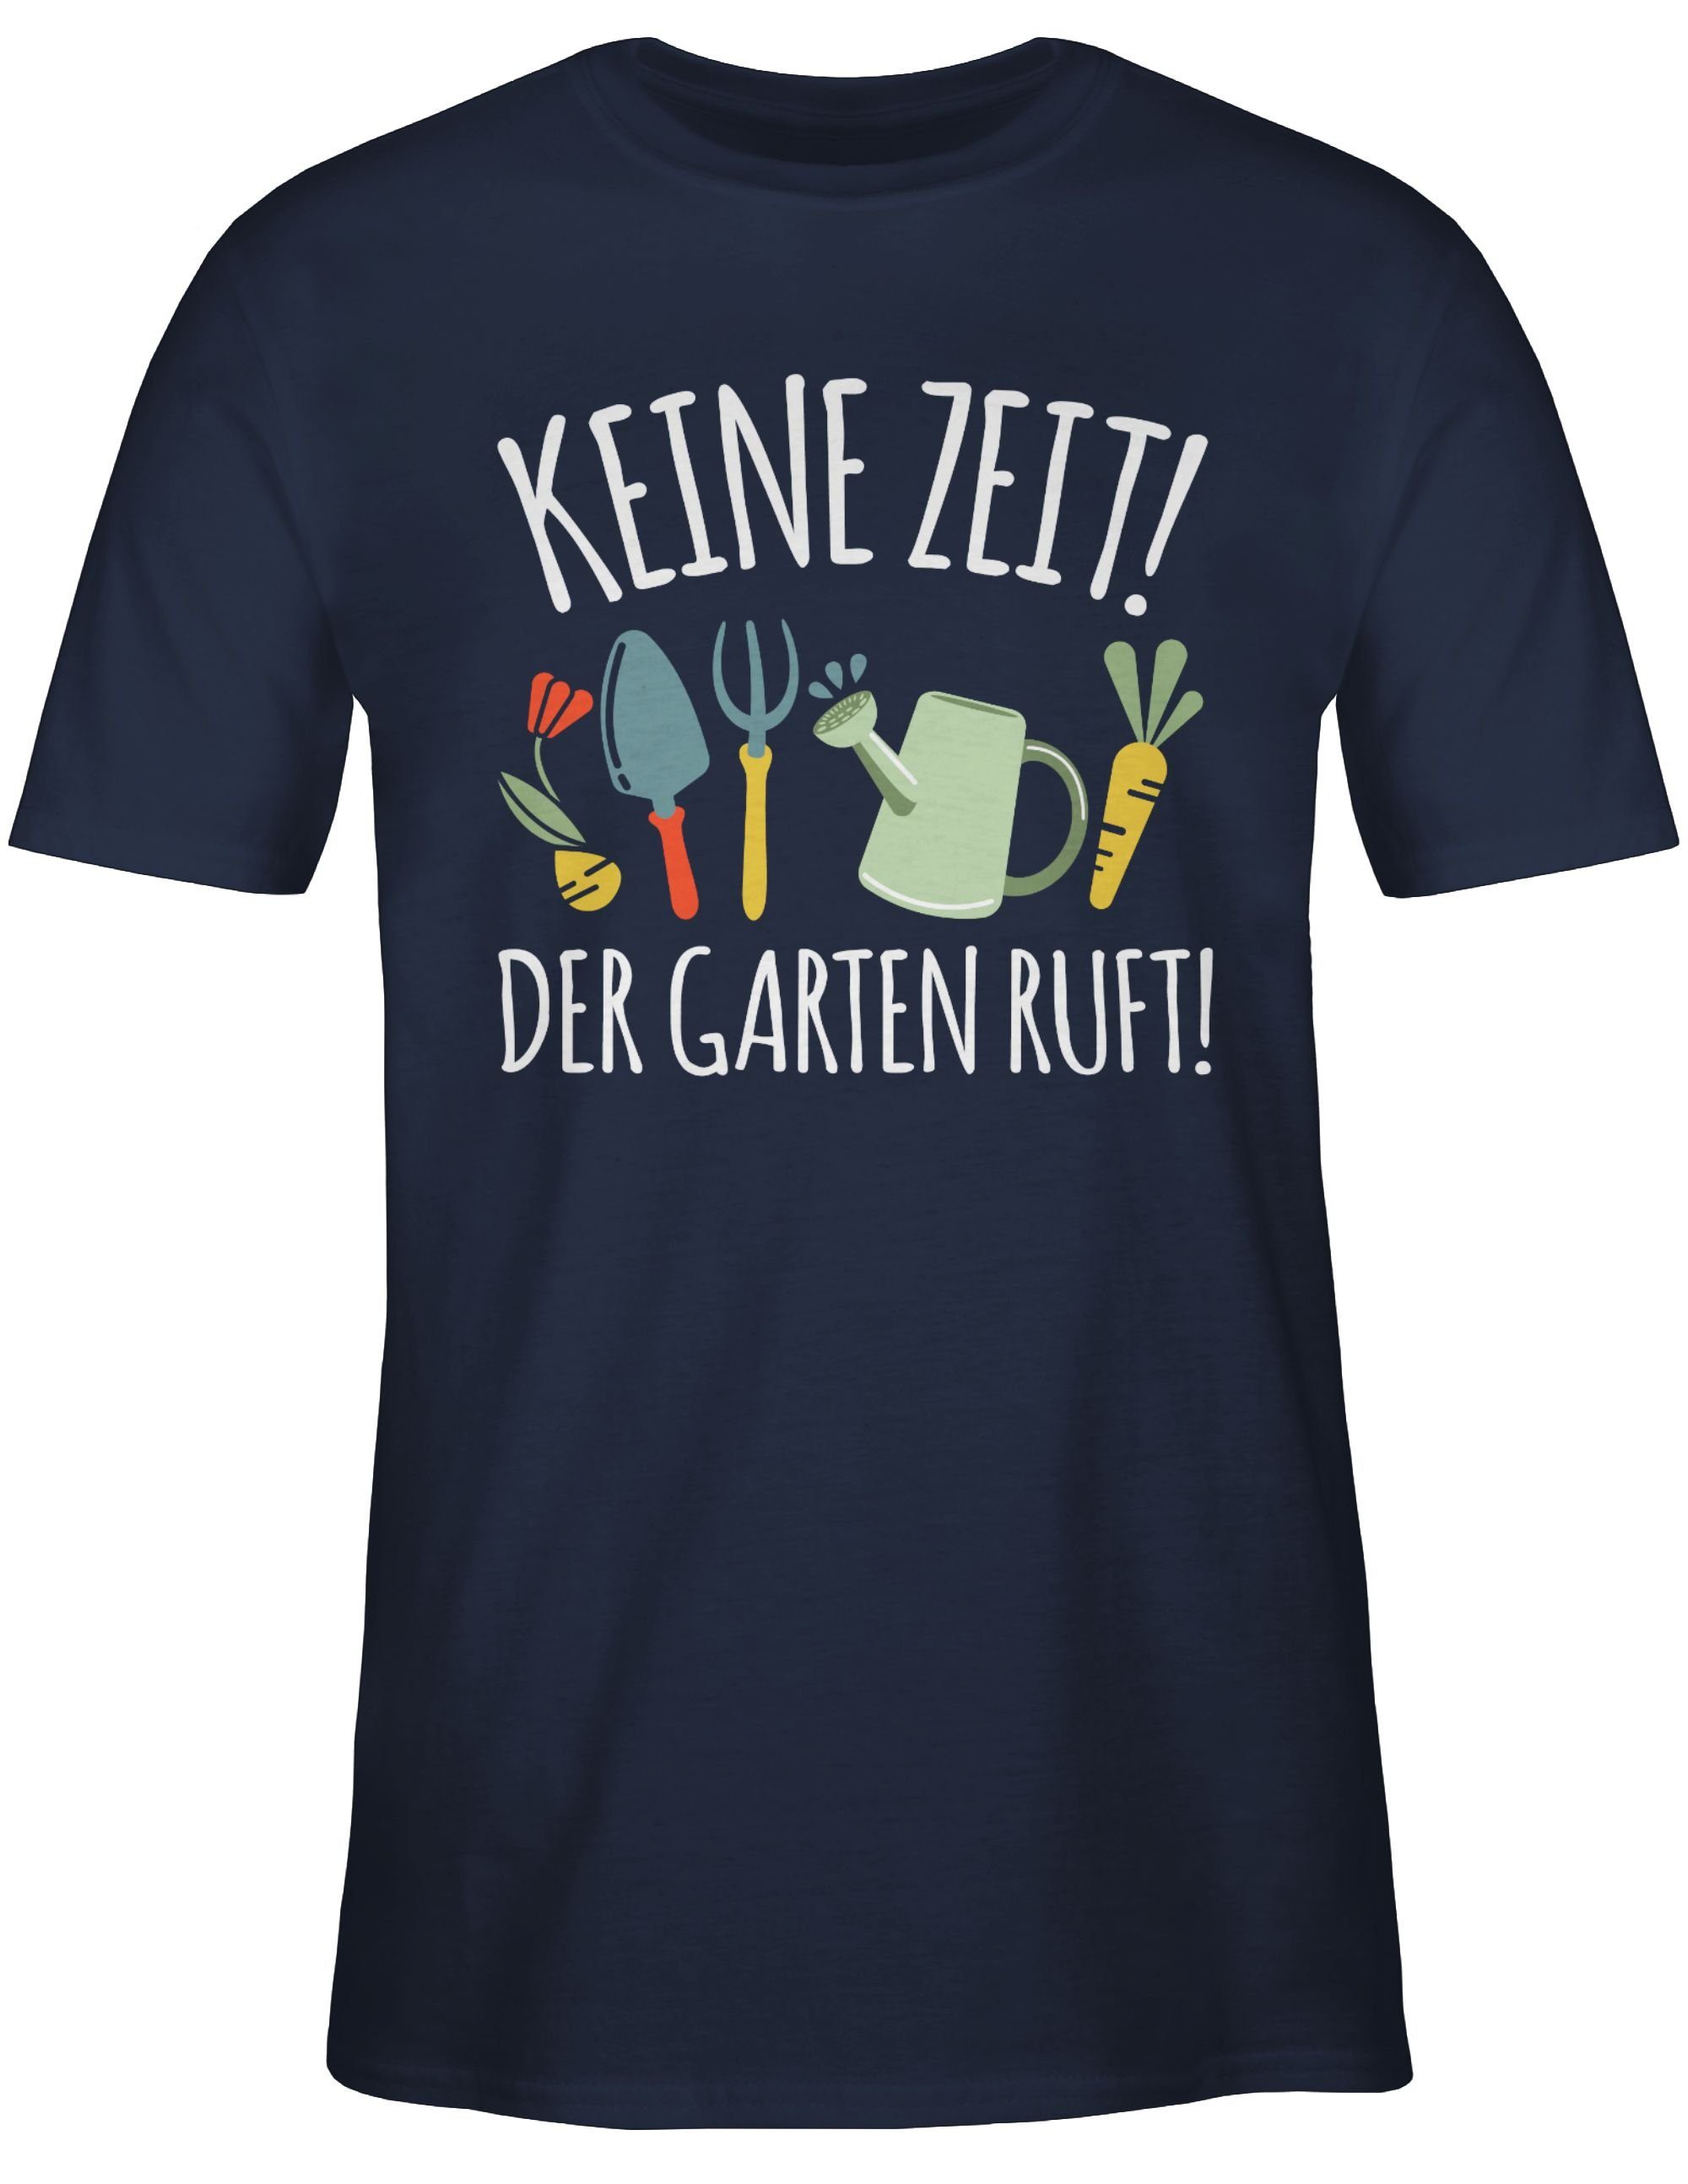 Shirtracer Hobby Outfit ruft - Garten T-Shirt Blau Keine Navy 2 Der weiß Zeit!